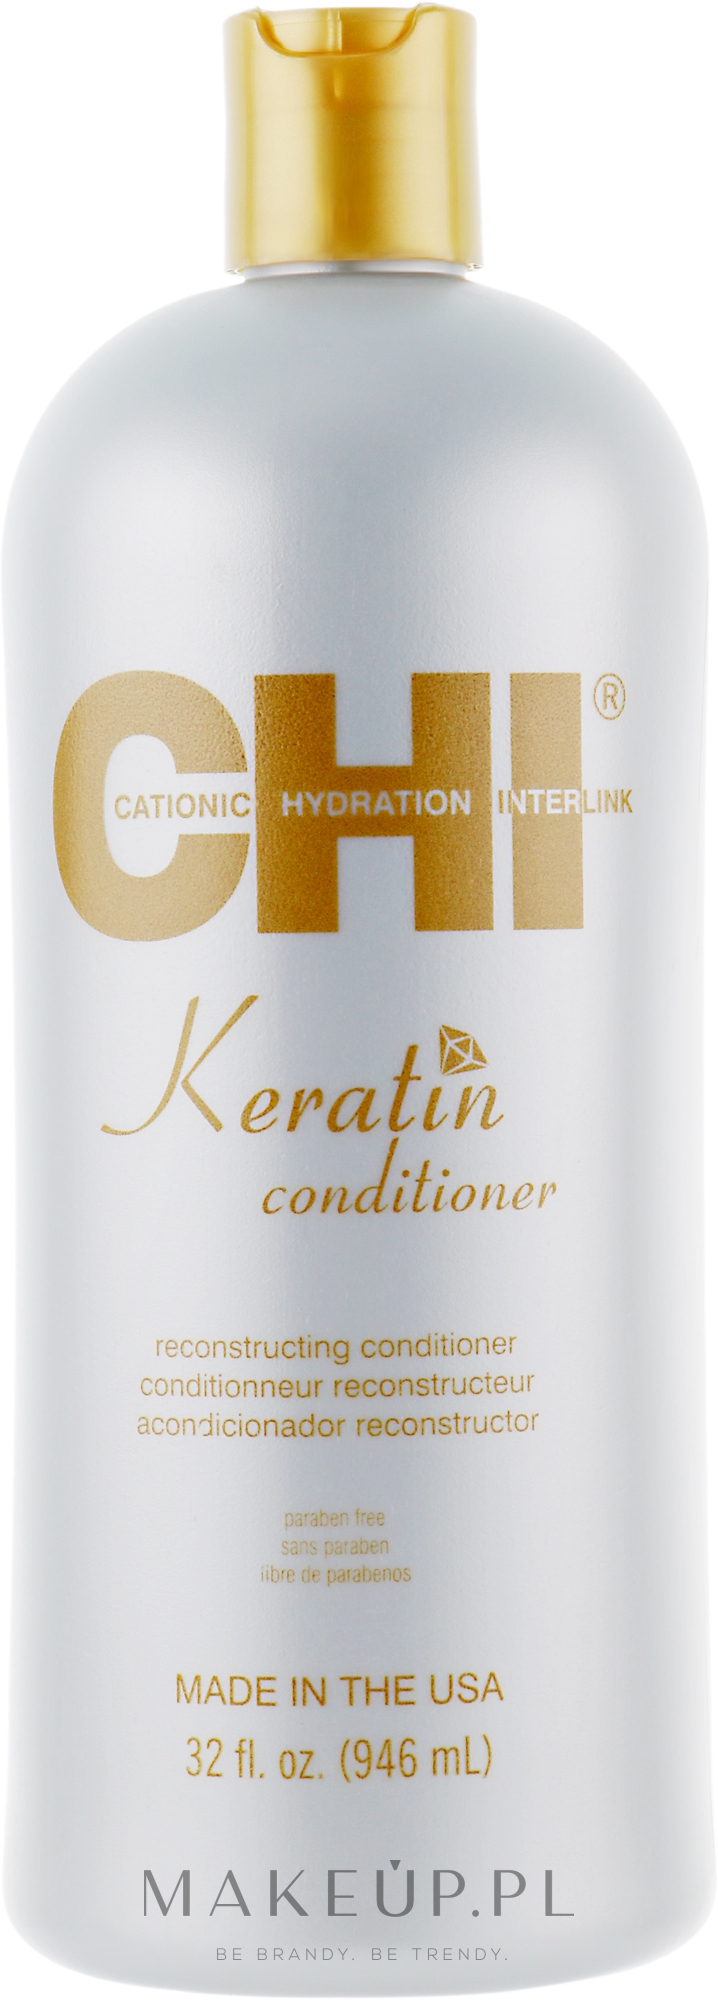 Odżywka z jedwabiem, olejem arganowym, jojoba i keratyną odbudowująca włosy - CHI Keratin Conditioner — Zdjęcie 946 ml